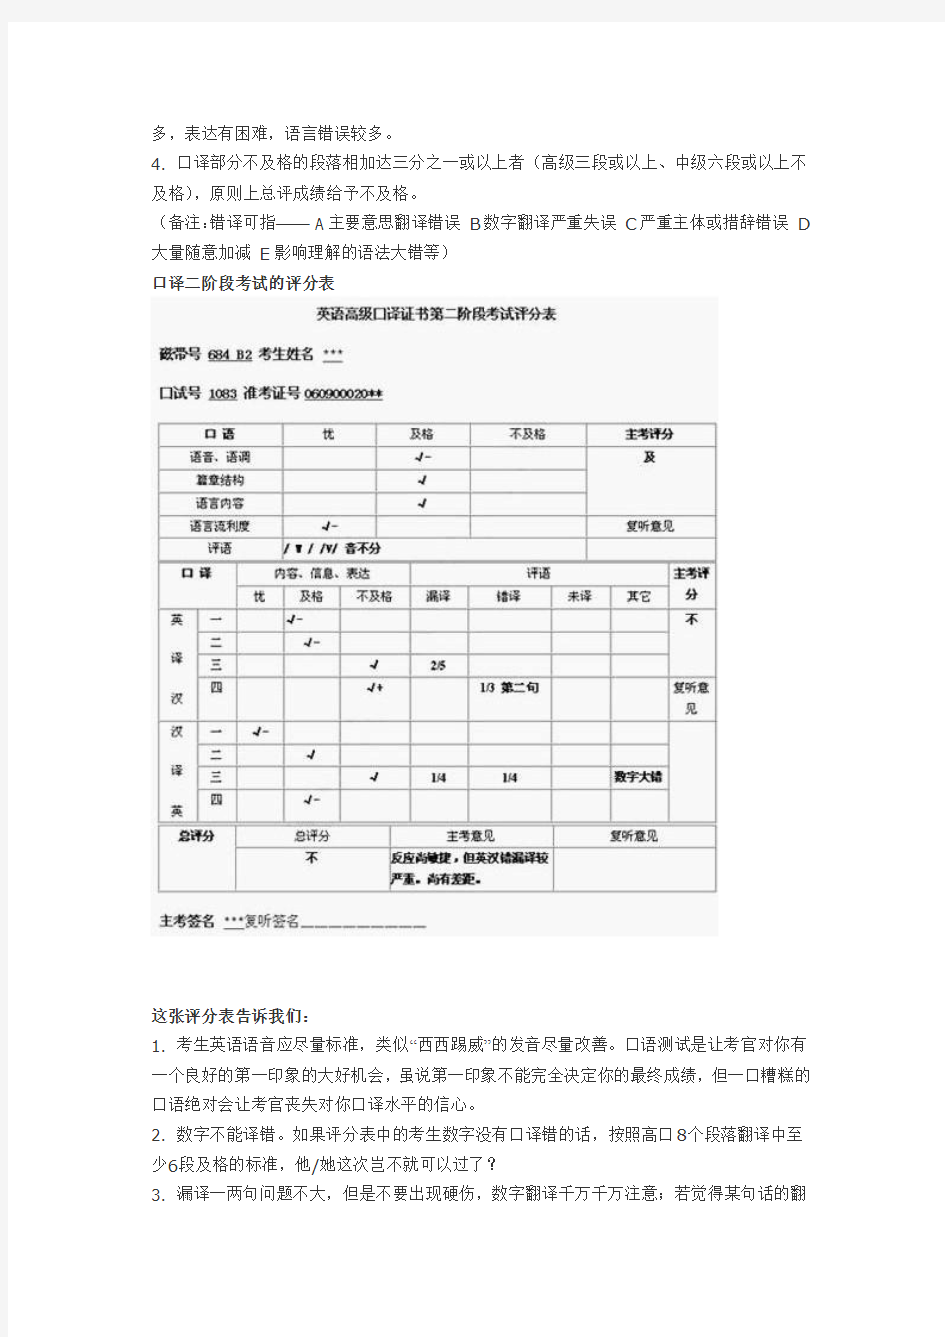 上海中高口二阶段口试流程+评分表大曝光